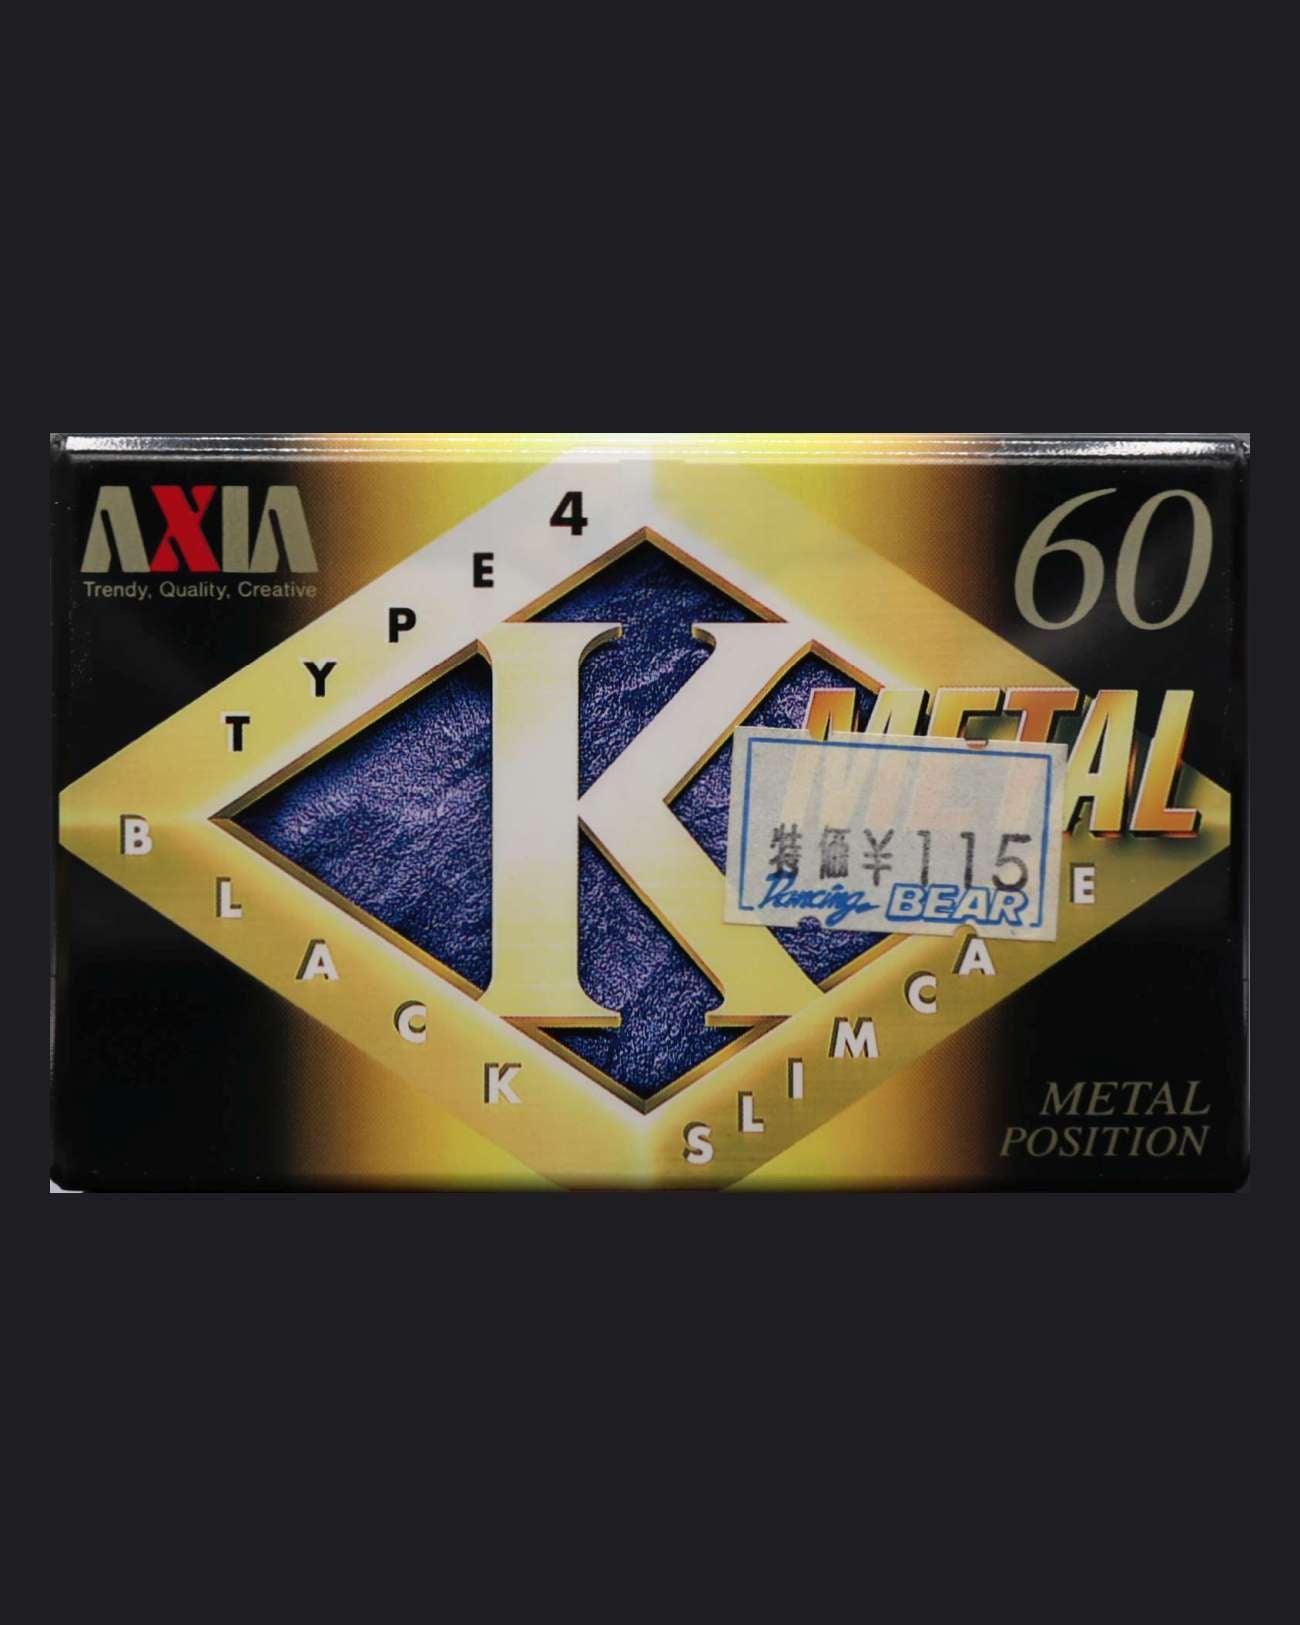 AXIA K Metal (1996 JP)